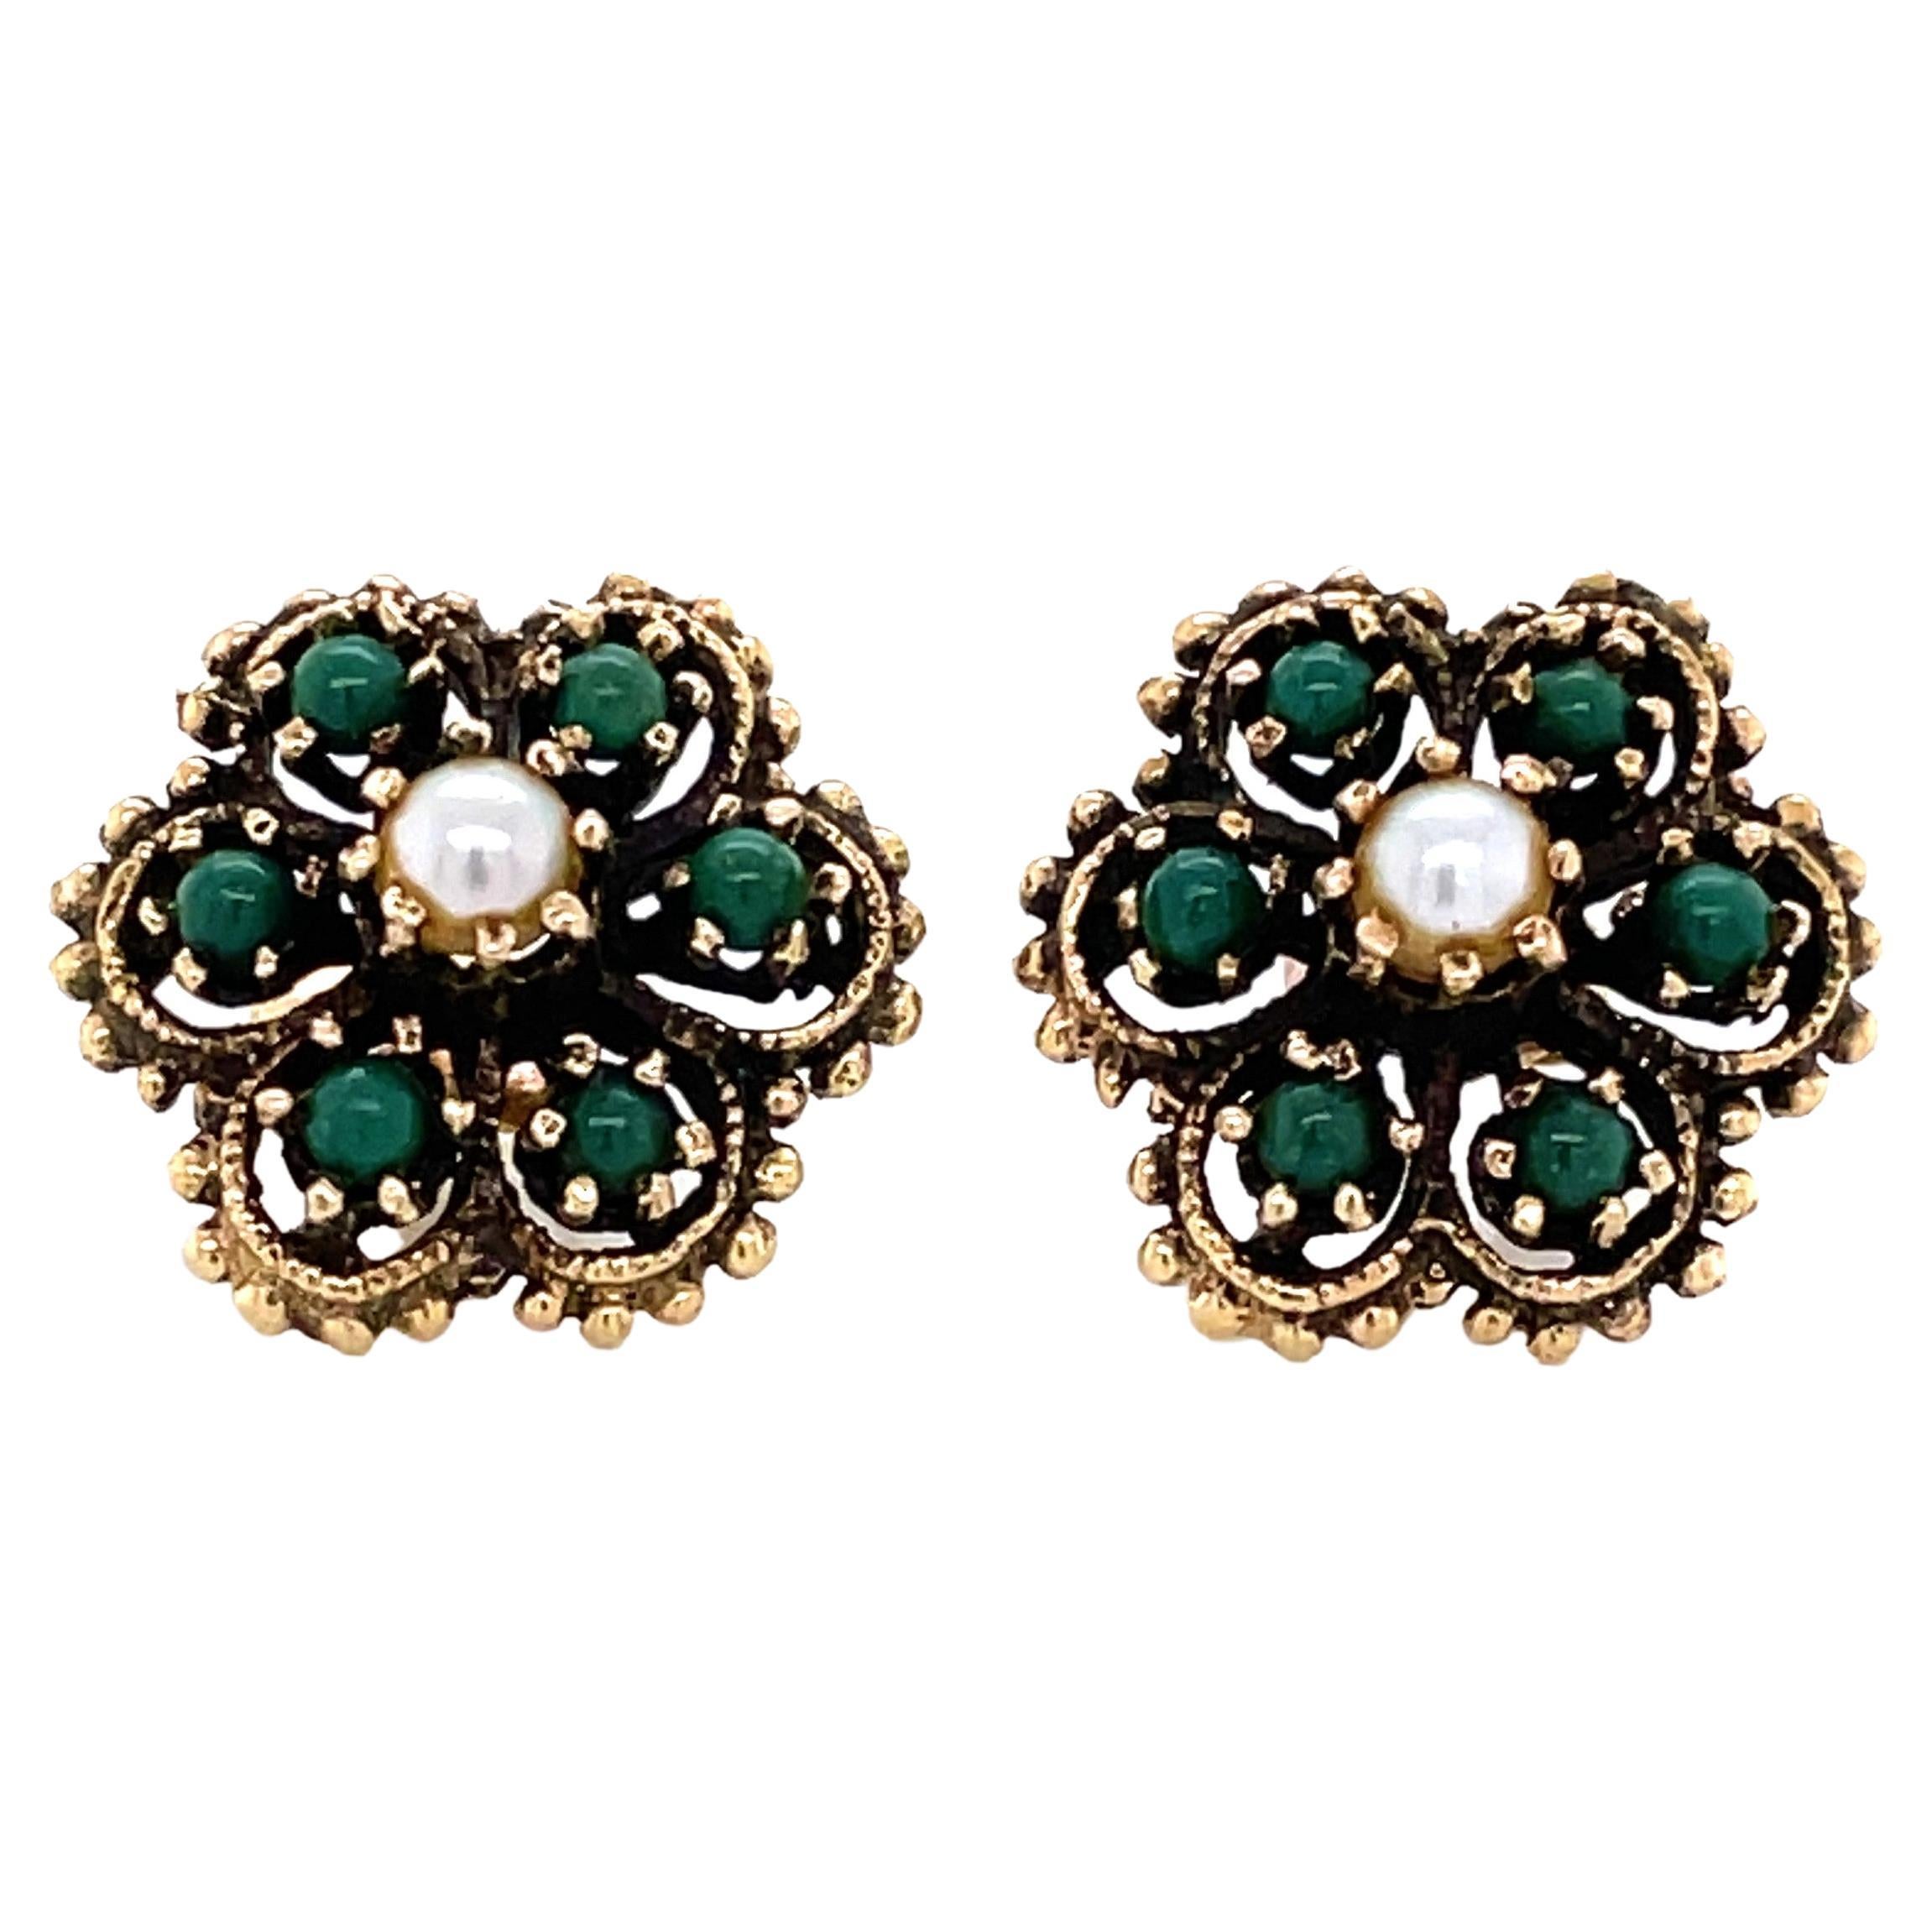 Clous d'oreilles à fleurs de style ancien en or jaune 14 carats avec perles vertes et turquoises